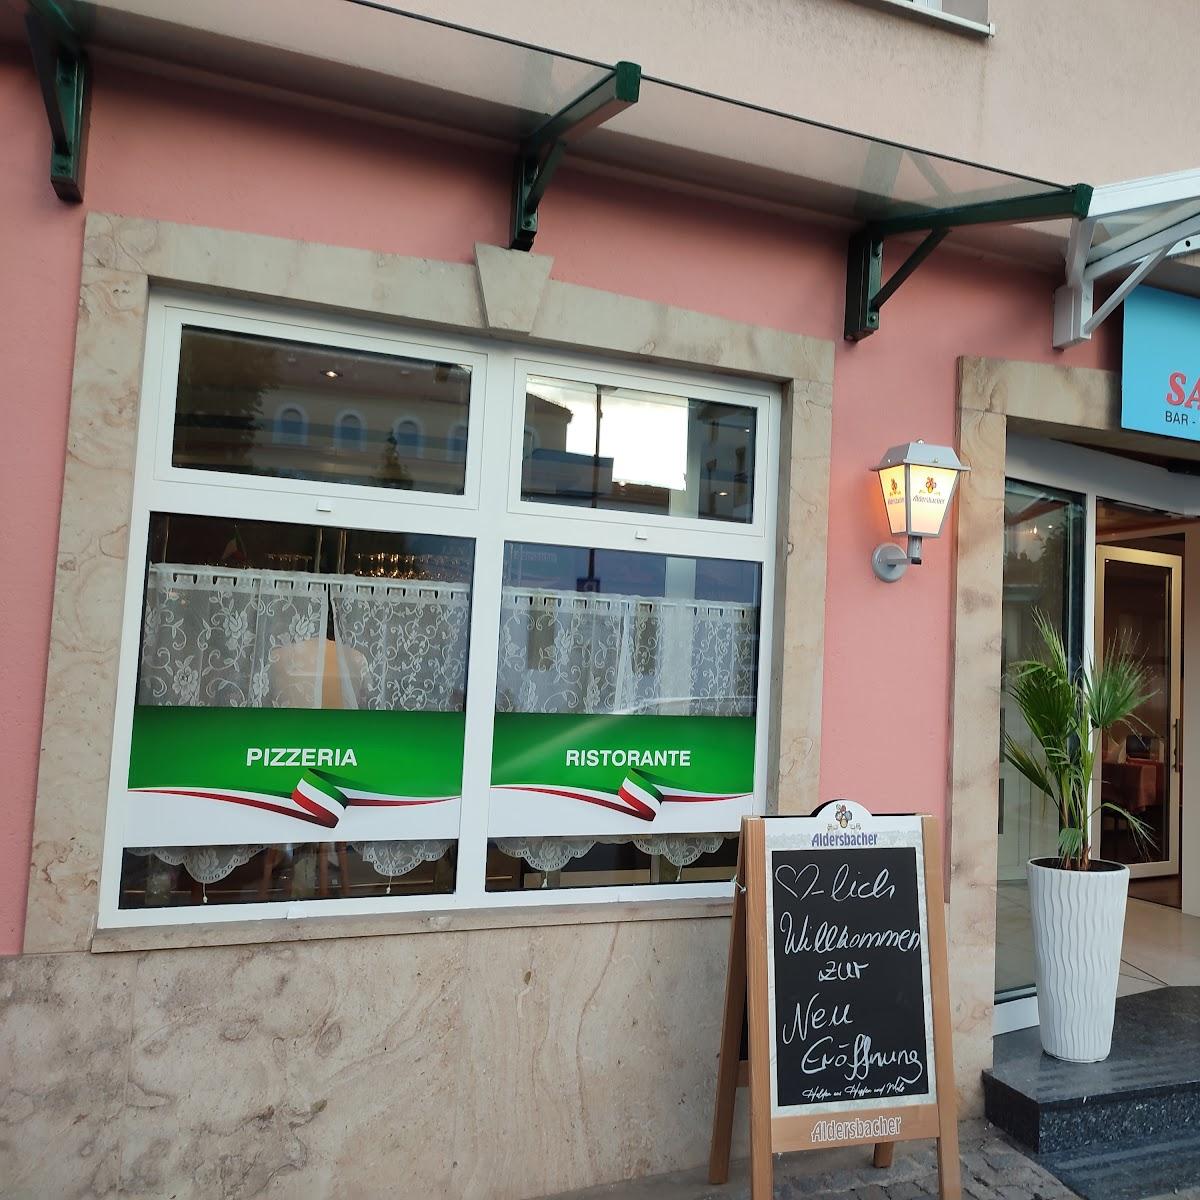 Restaurant "Il Salento Via Vai" in Simbach am Inn